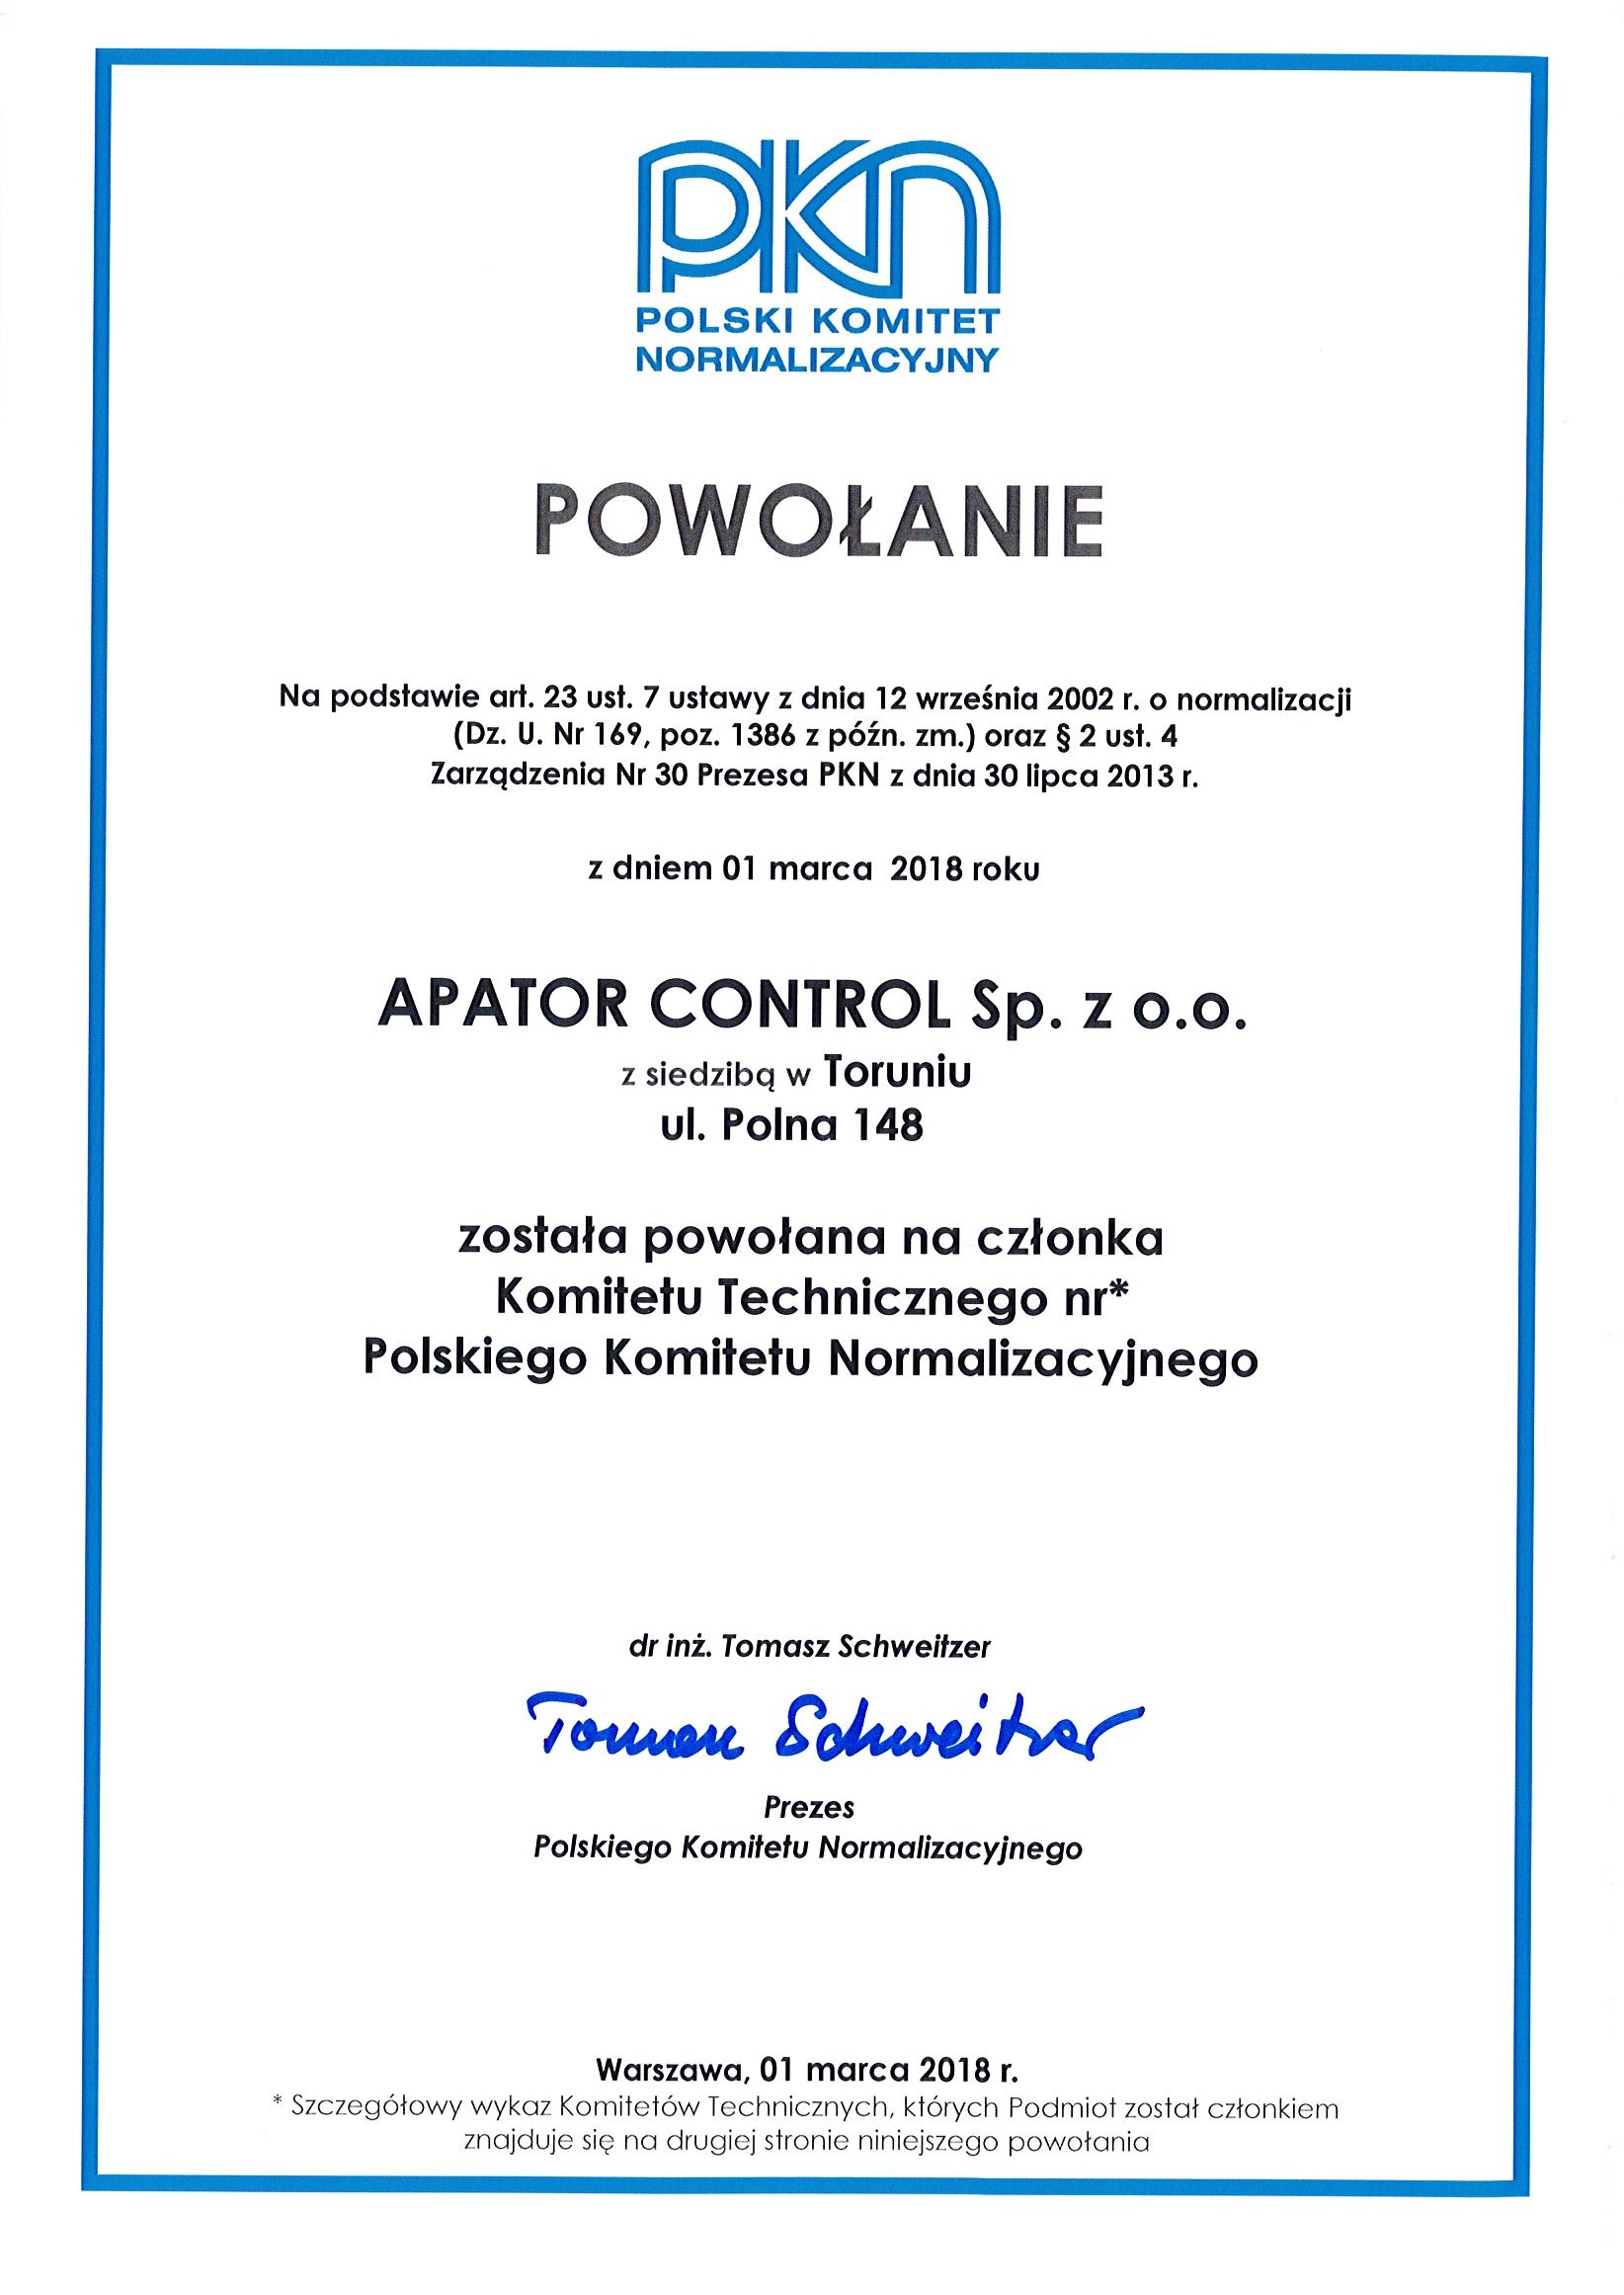 Apator Control członkiem Polskiego Komitetu Normalizacyjnego